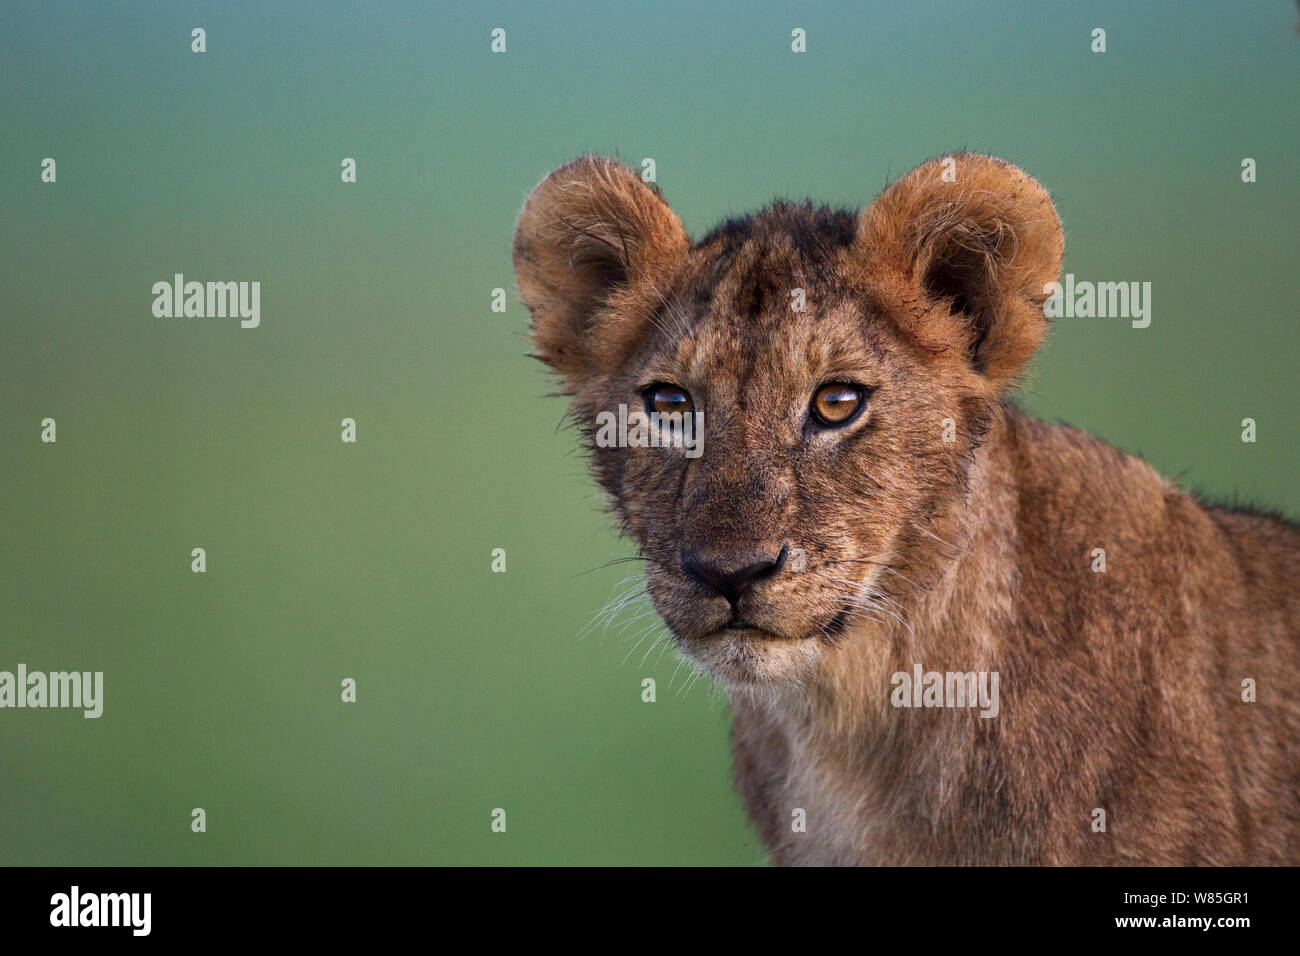 Lion (Panthera leo) cub âgés d'une année, portrait. Masai Mara National Reserve, Kenya. Banque D'Images